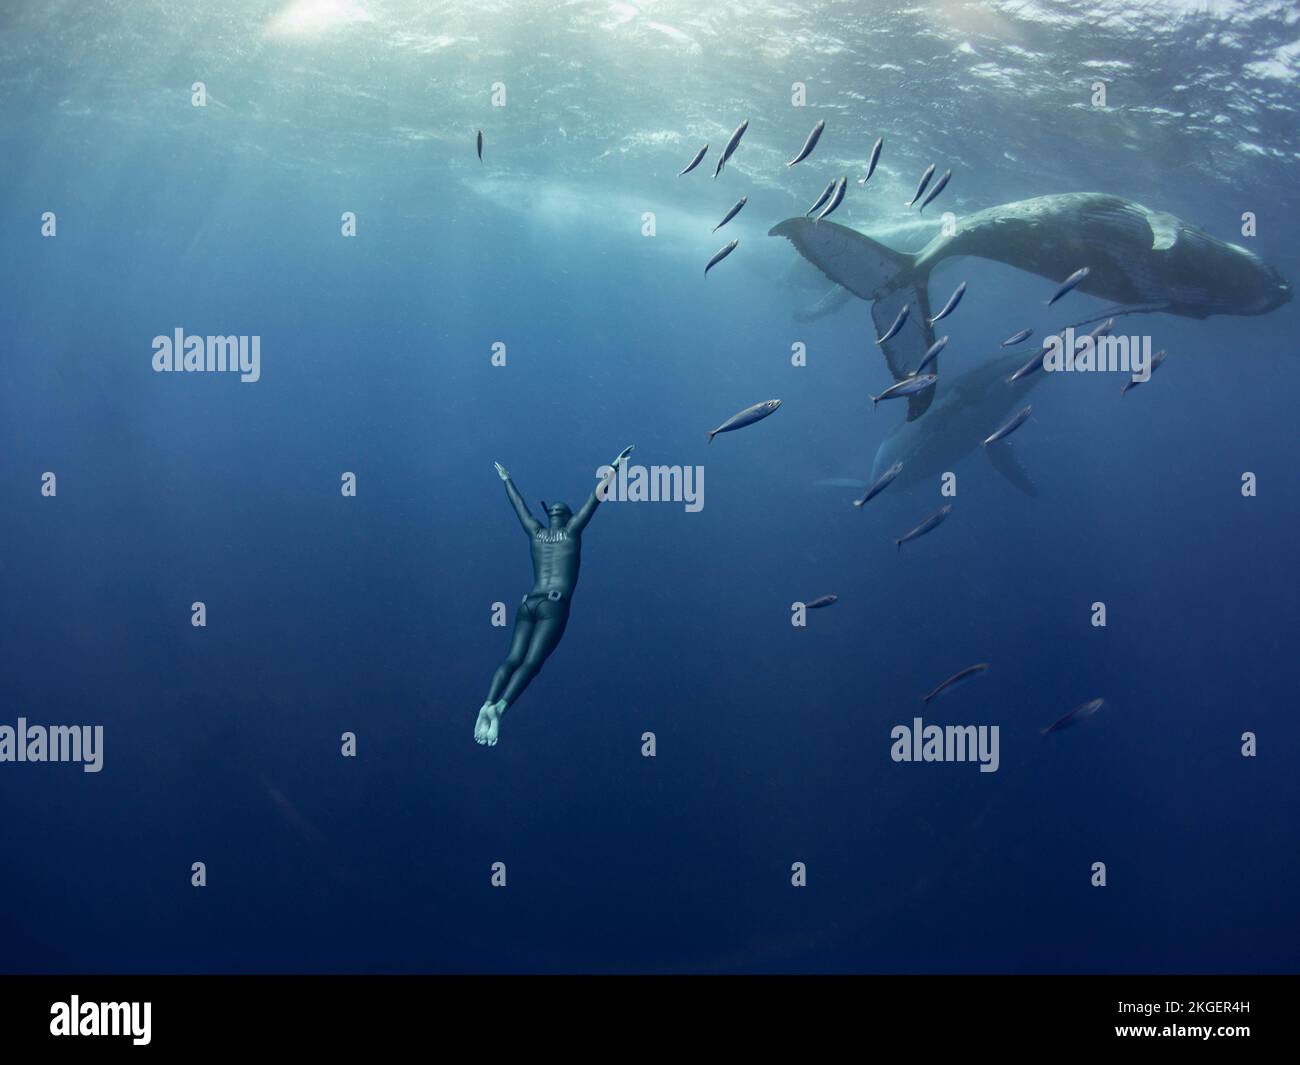 Seguendo dietro questi giganti gentili. Il Regno di Tonga, Australia: BELLE immagini mostrano un freediver in perfetta armonia mentre nuota accanto a. Foto Stock